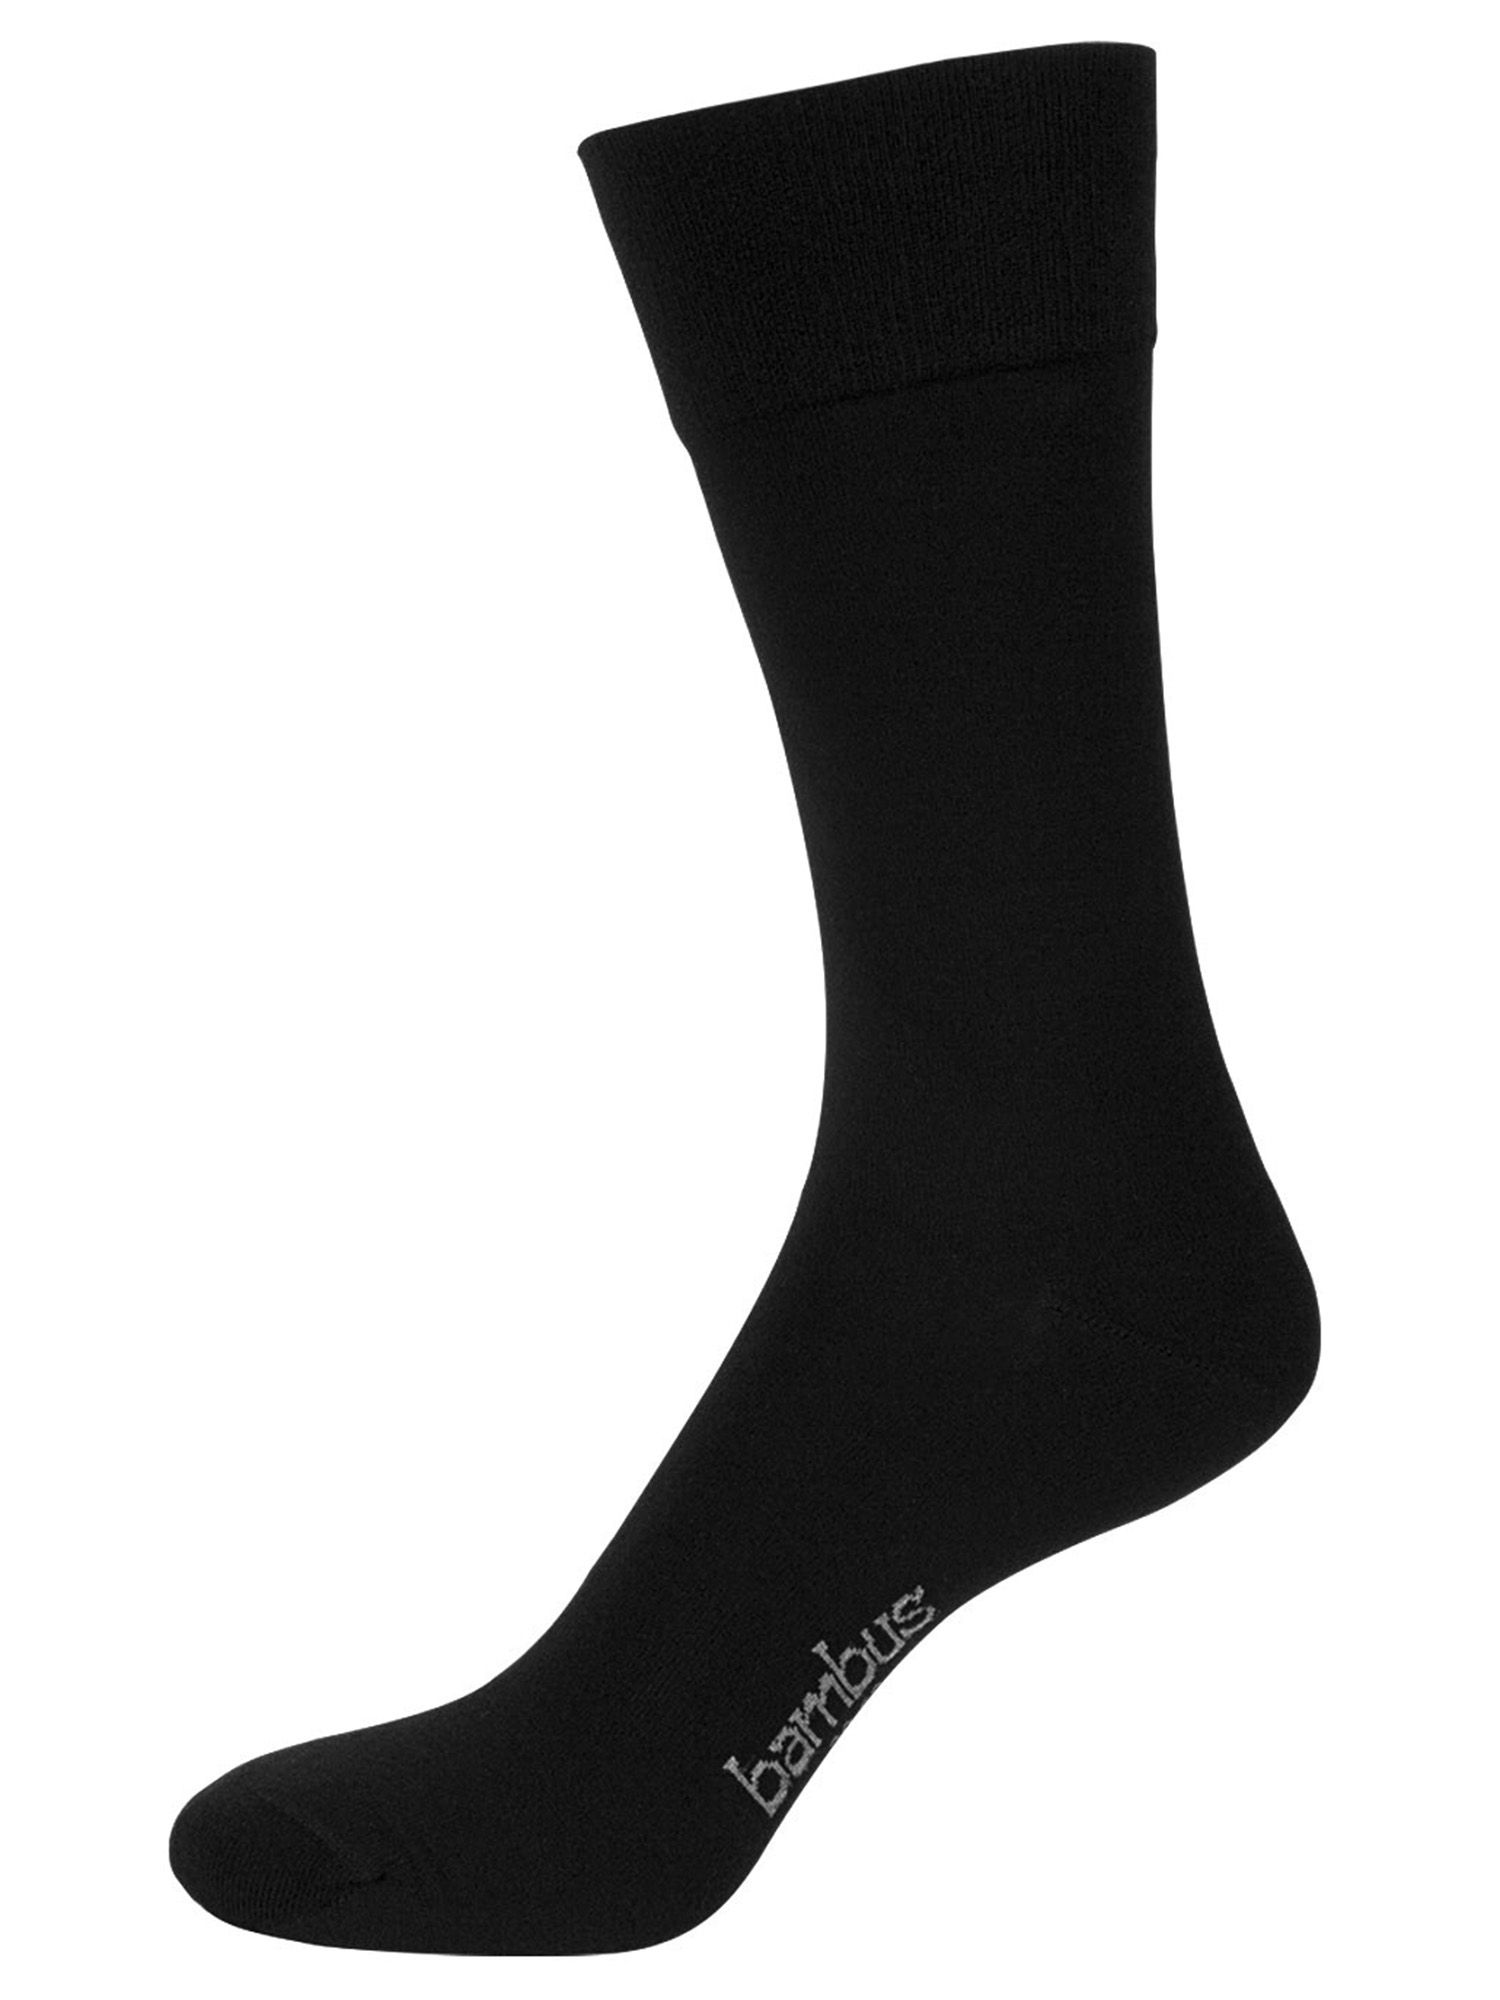 NUR DER Socke Bambus* Komfort - schwarz - Größe 43-46